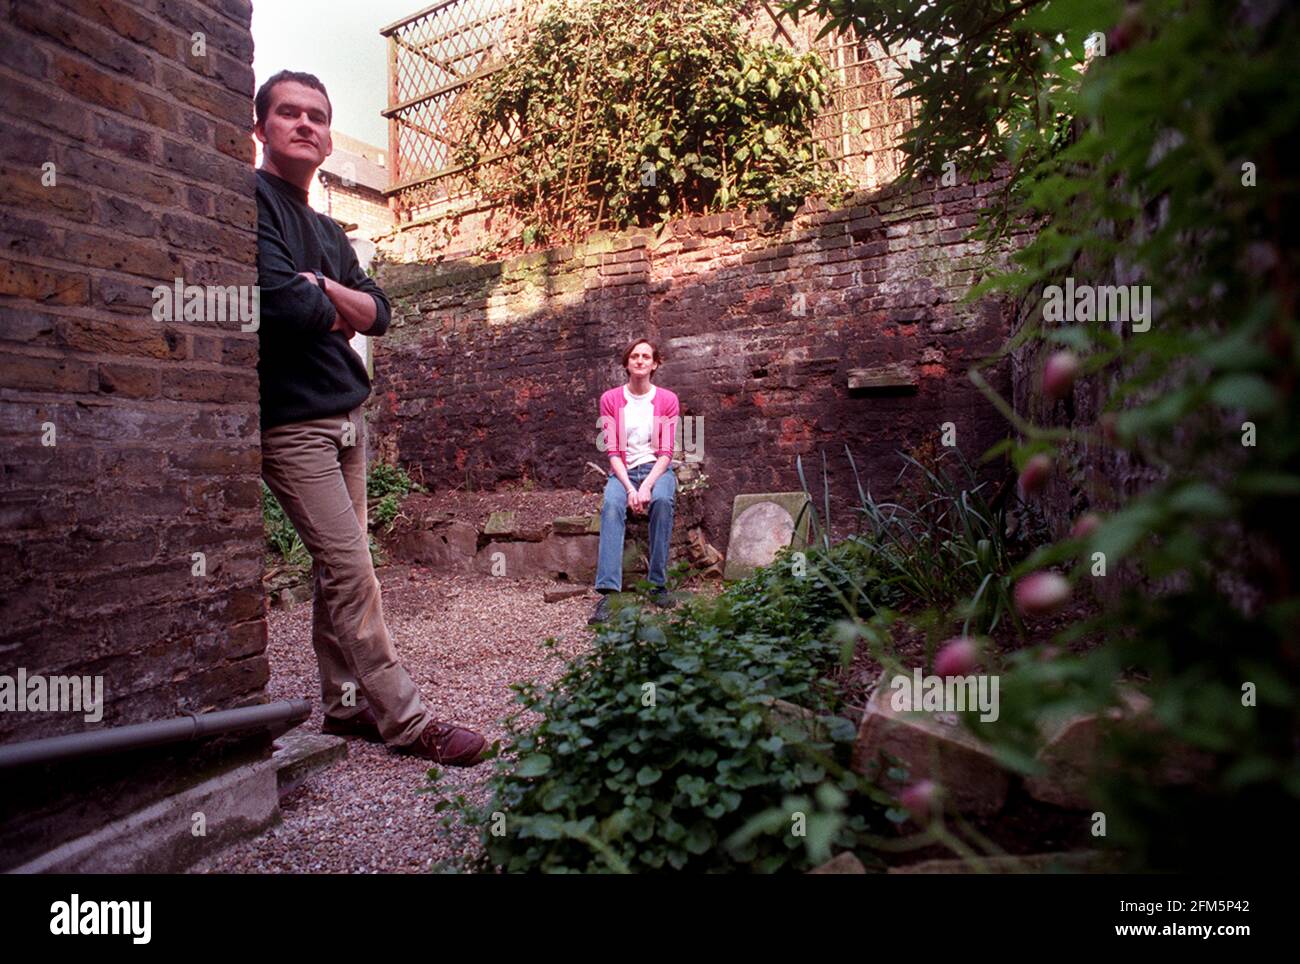 Jonathon und Vanessa Ringer März 2000 Im Garten ihres kürzlich erworbenen Londoner Hauses. Stockfoto